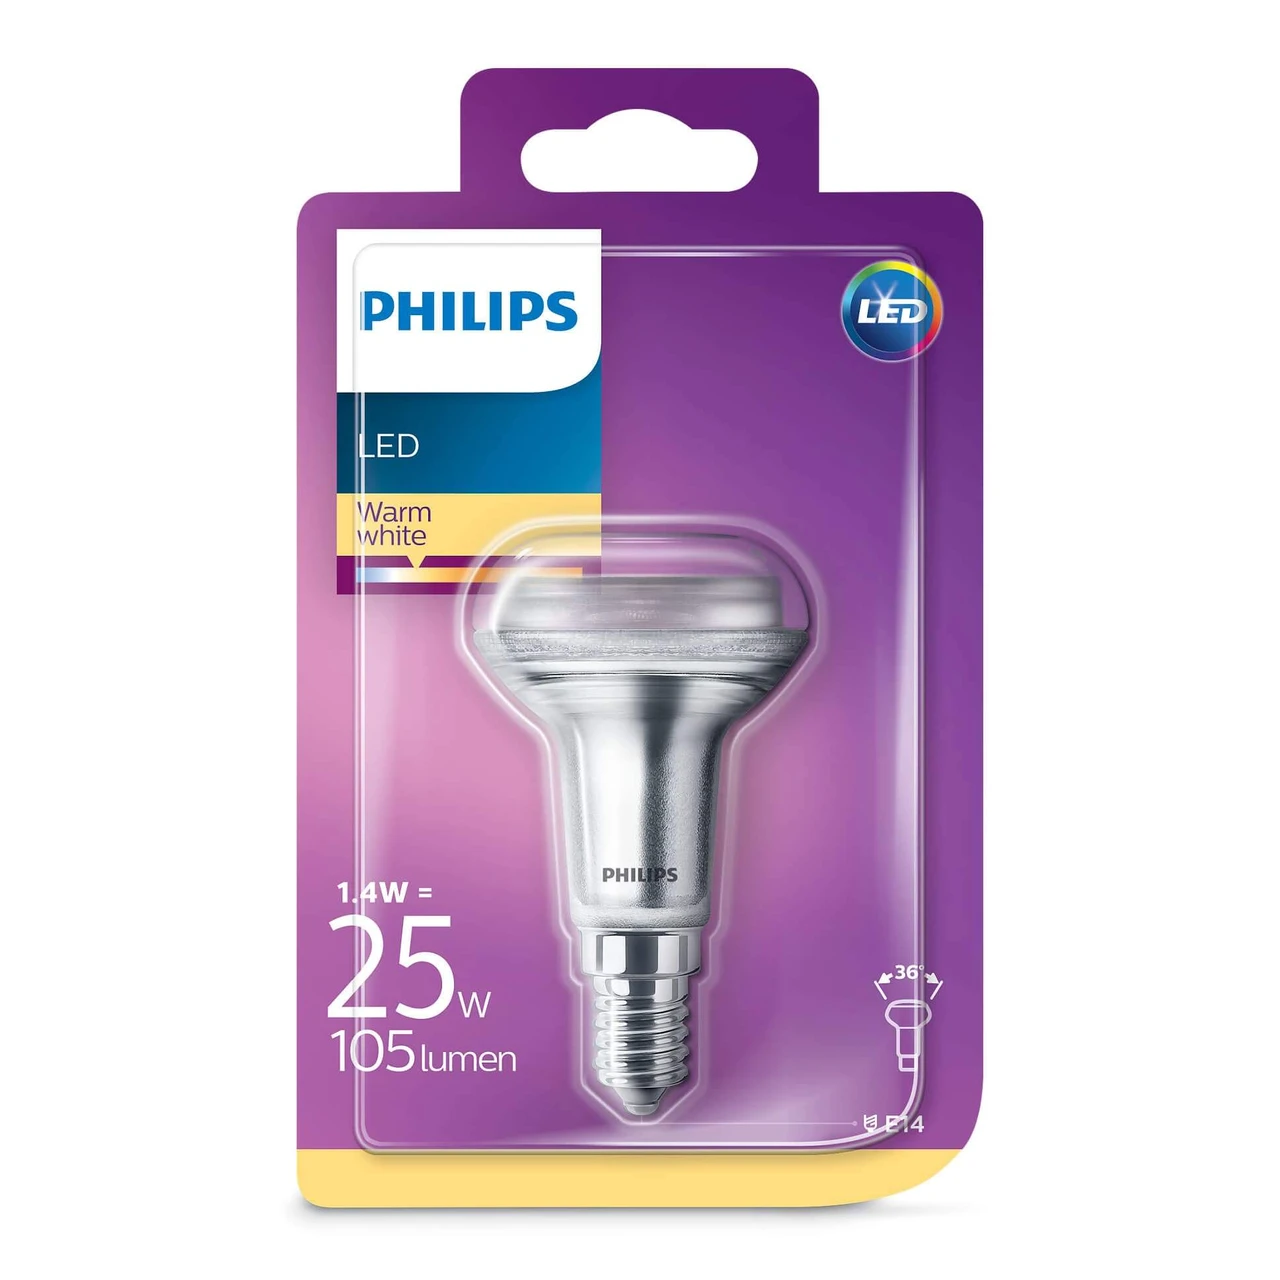 korrekt virtuel At søge tilflugt Bulb LED 1,4W (105lm) R50 Reflector E14 - Philips - Buy online